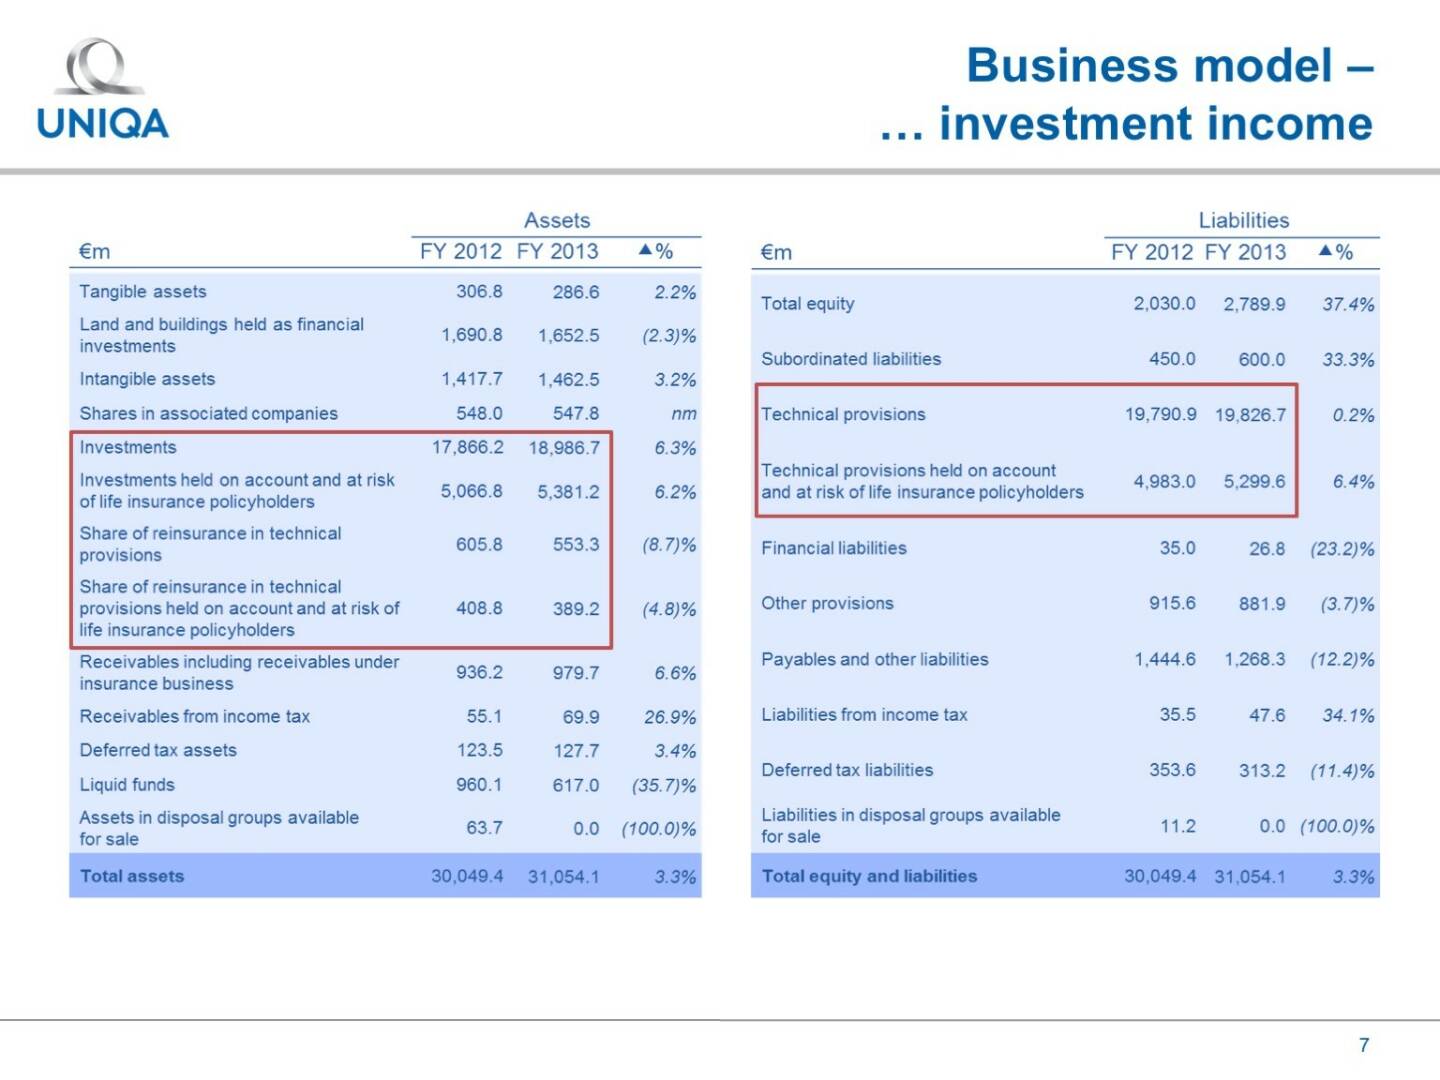 Uniqa - Business model - investment income